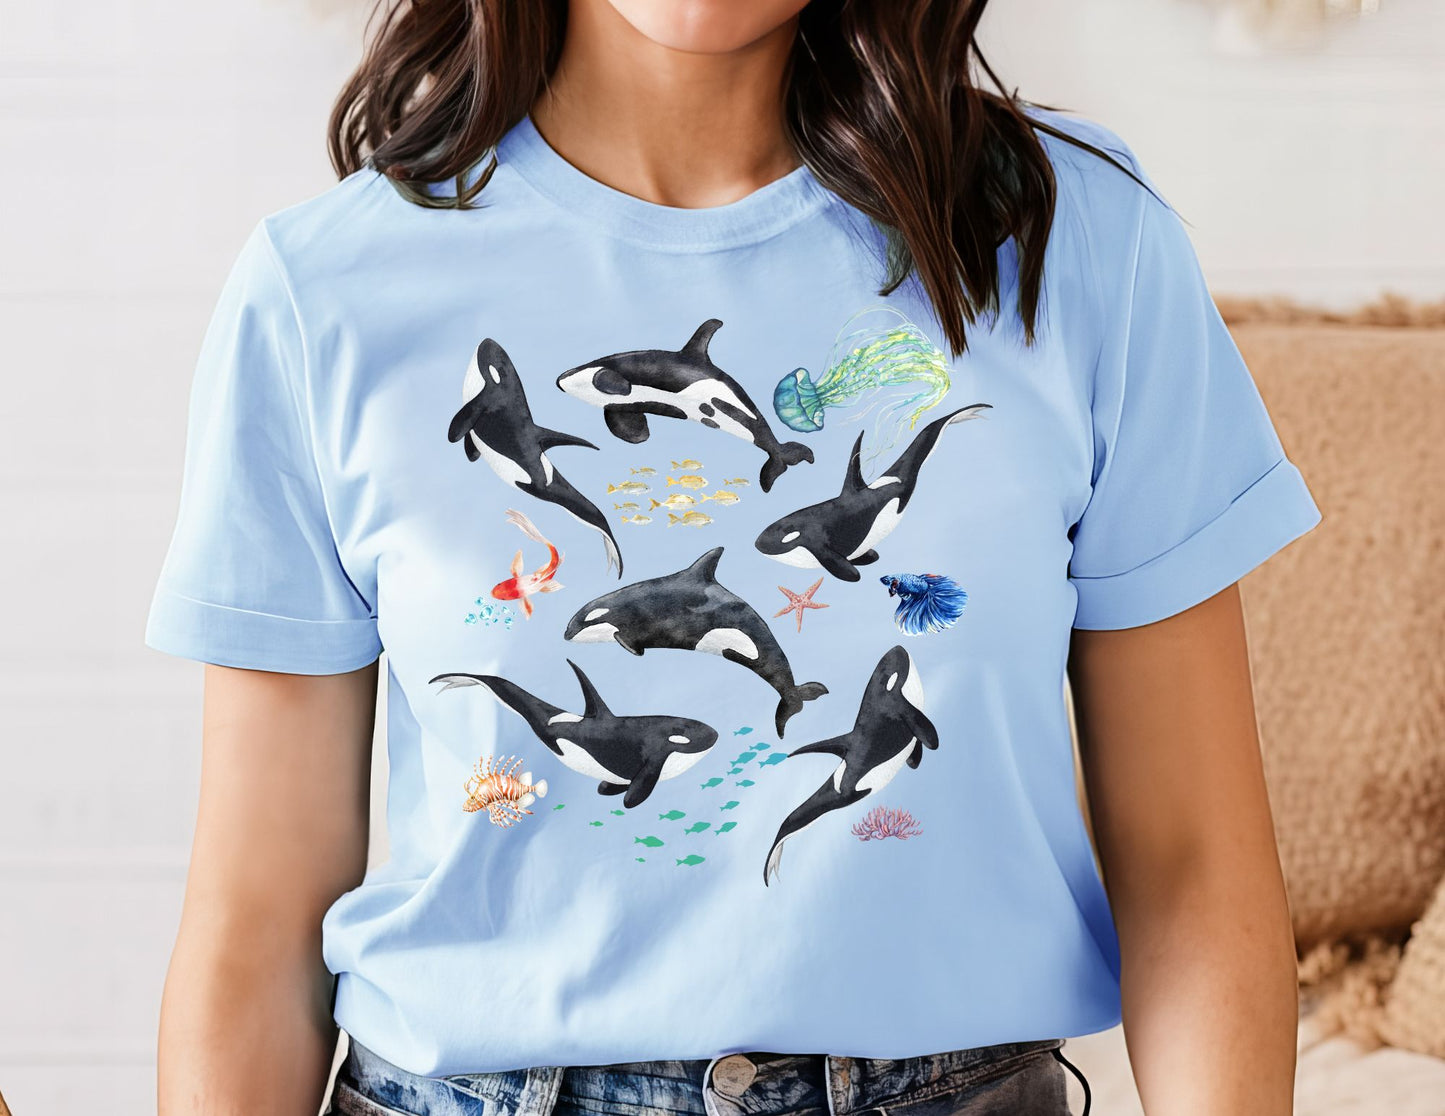 Orca Shirt - Beach Shirt - Summer Shirt - Killer Whale